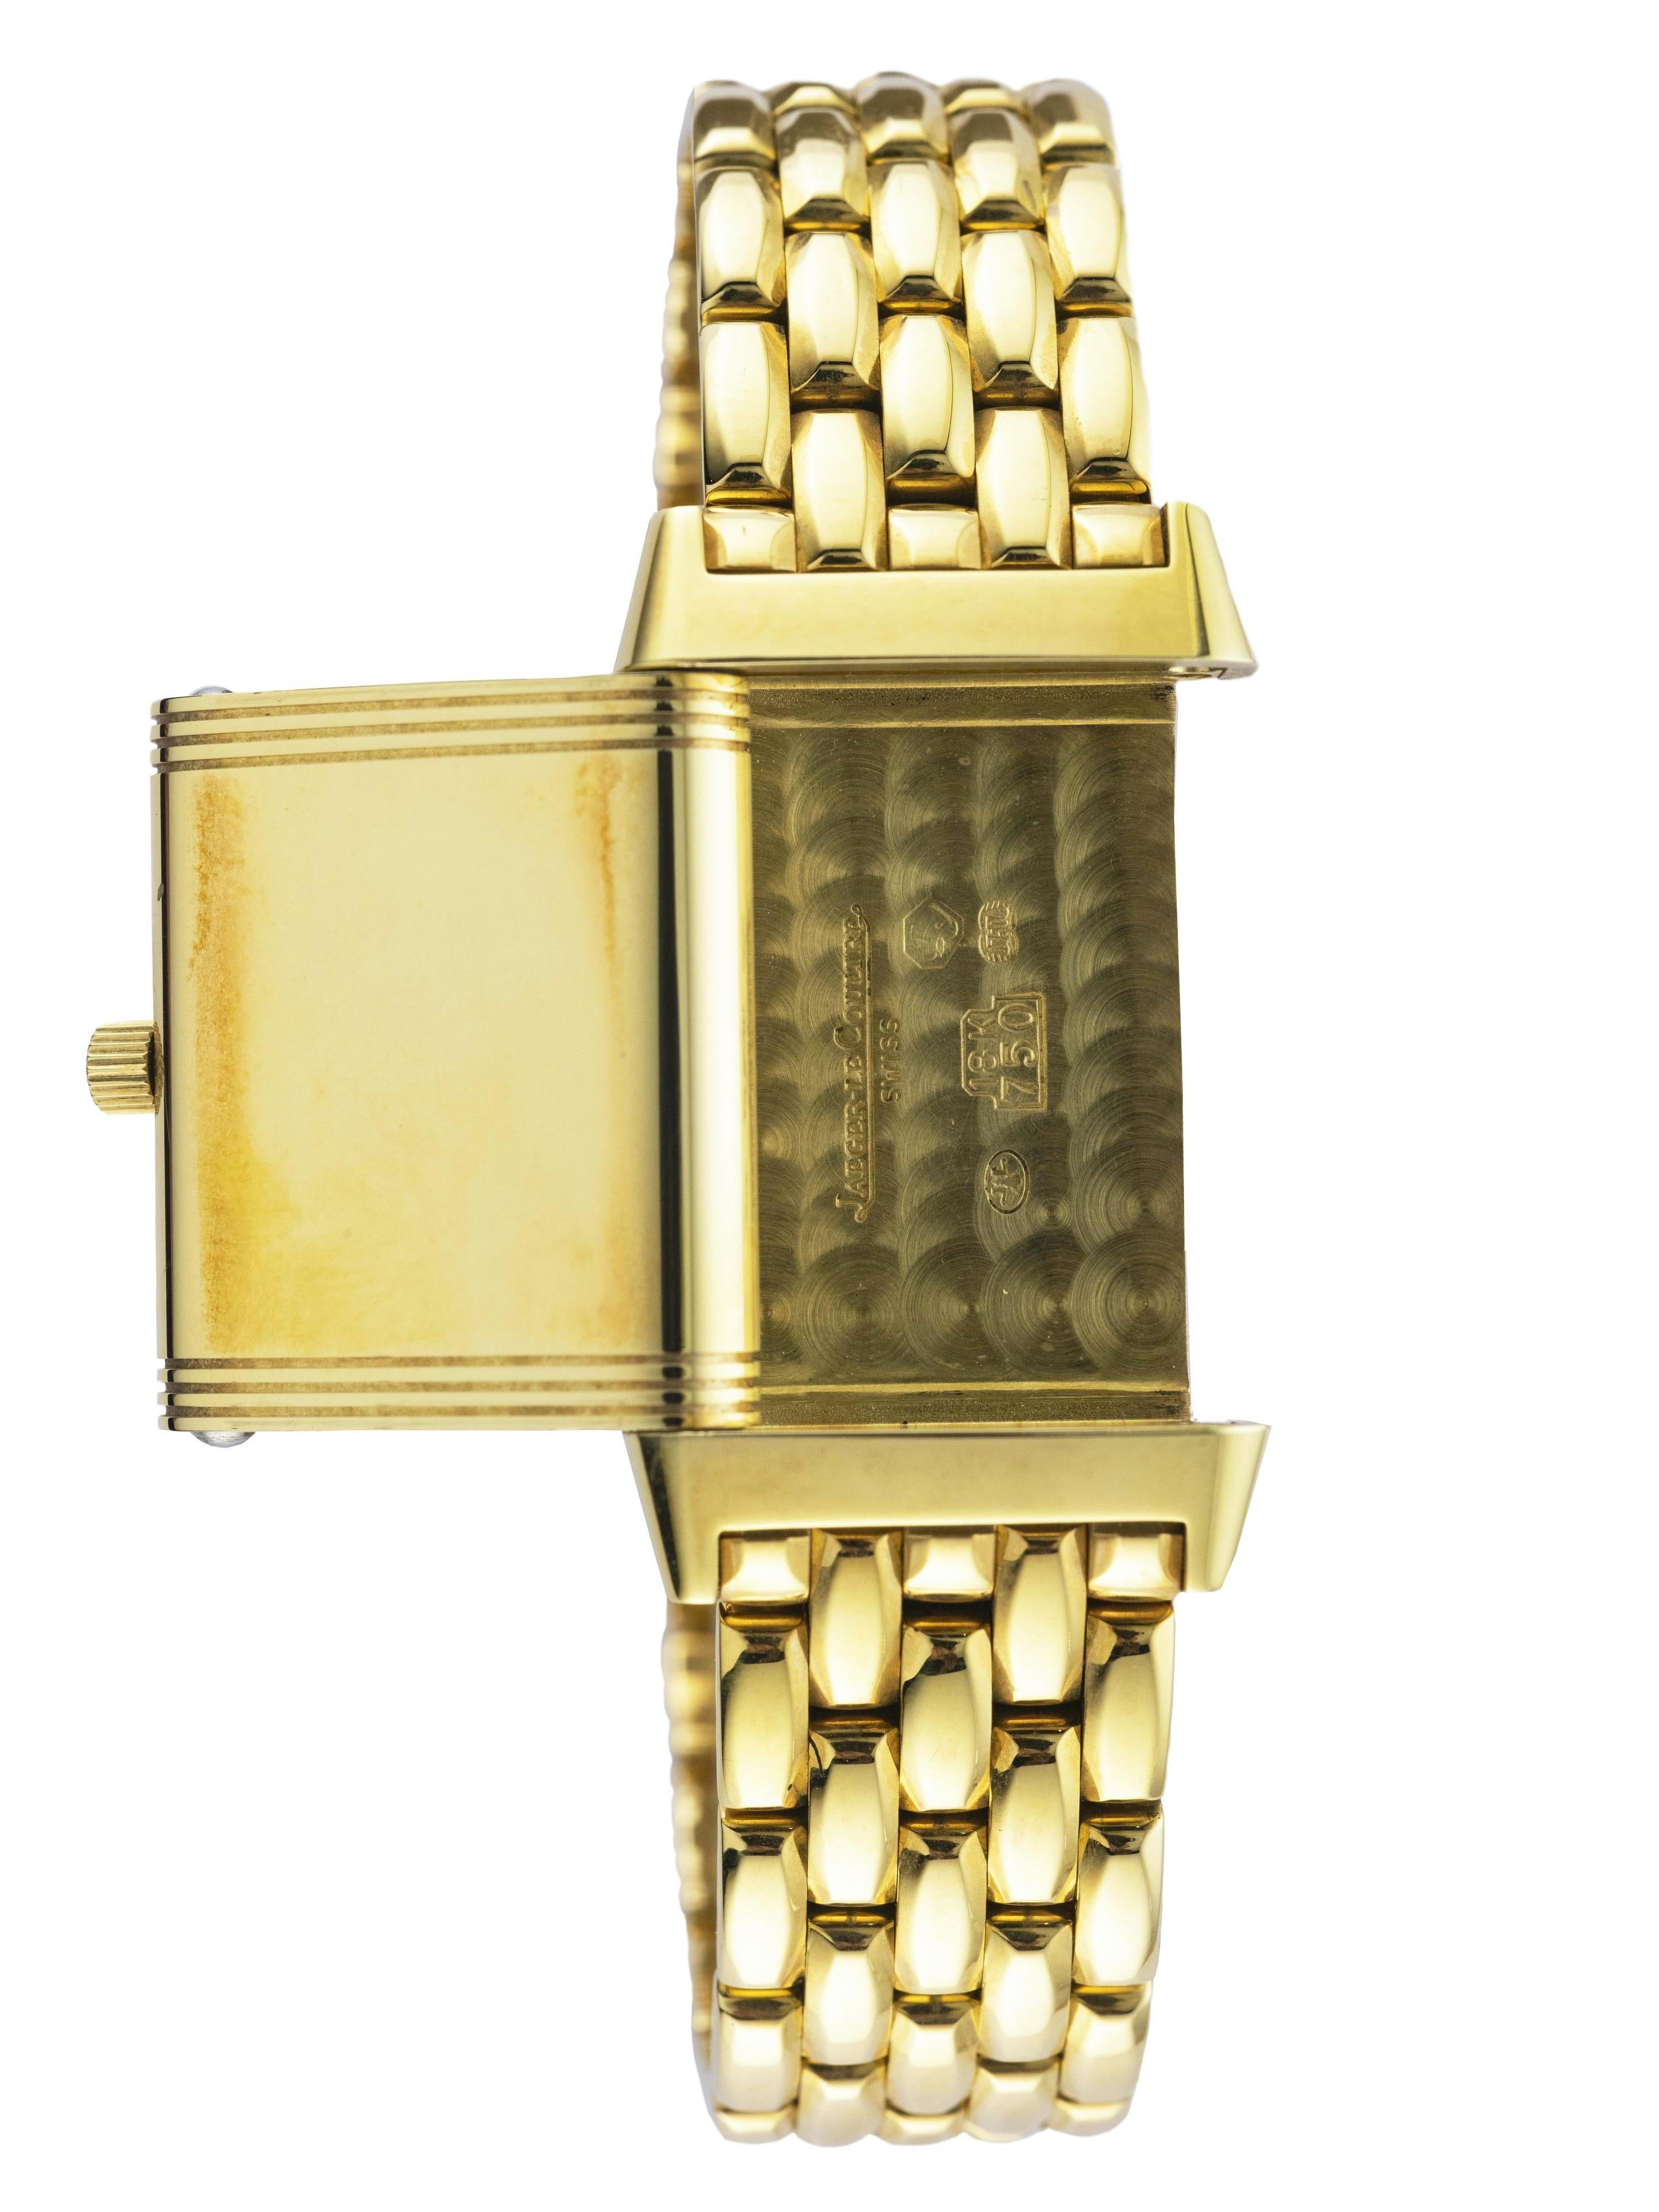 Cette montre Reverso en or jaune a un cadran argenté avec des aiguilles en acier bleui.
Un bracelet en or jaune est accompagné d'un fermoir double déployant, également en or jaune.
La pièce est équipée d'un verre saphir et d'un mouvement à remontage